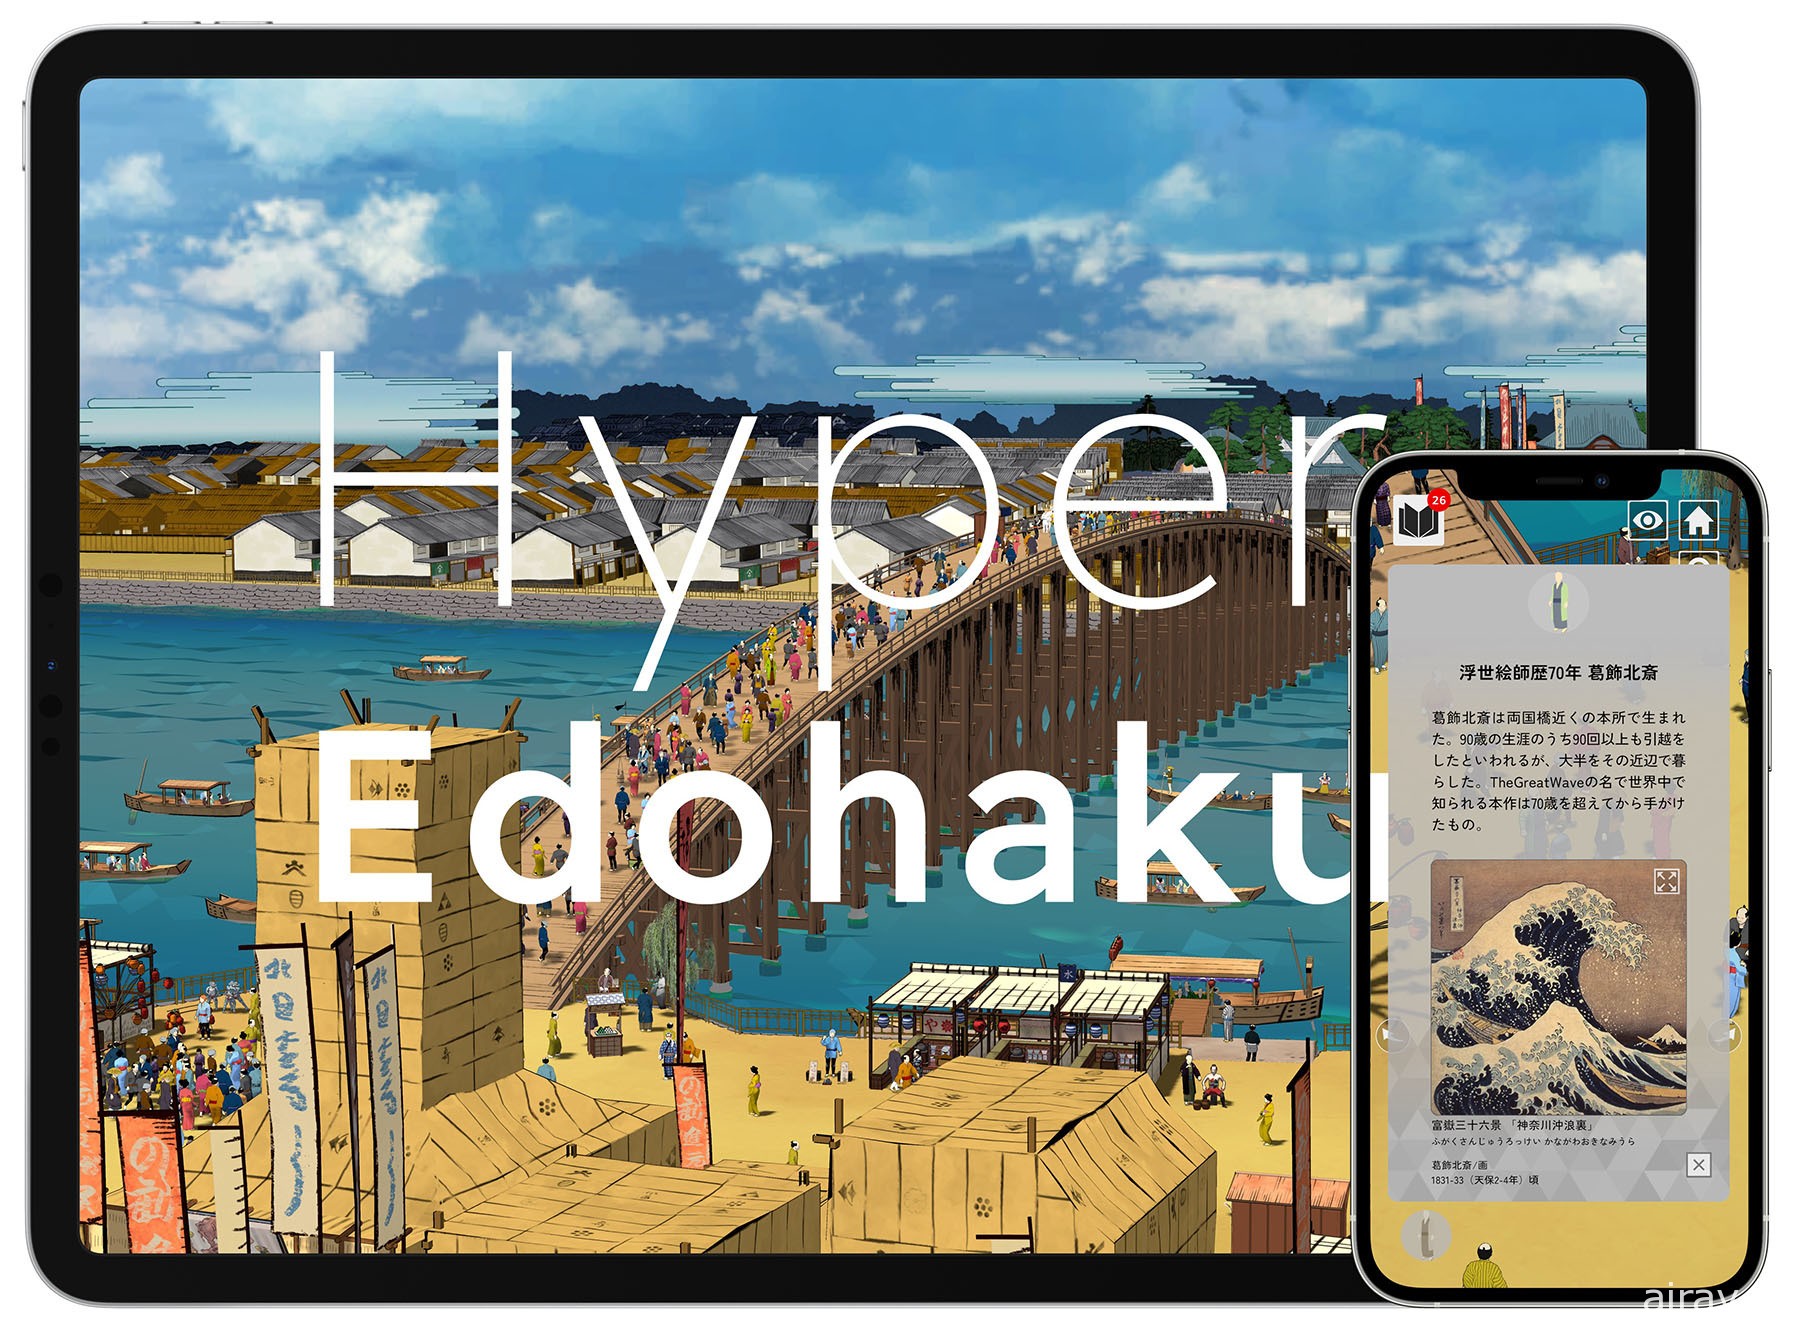 日本江戶東京博物館推出手機應用程式《Hyper 江戶博》以線上形式展示館內收藏